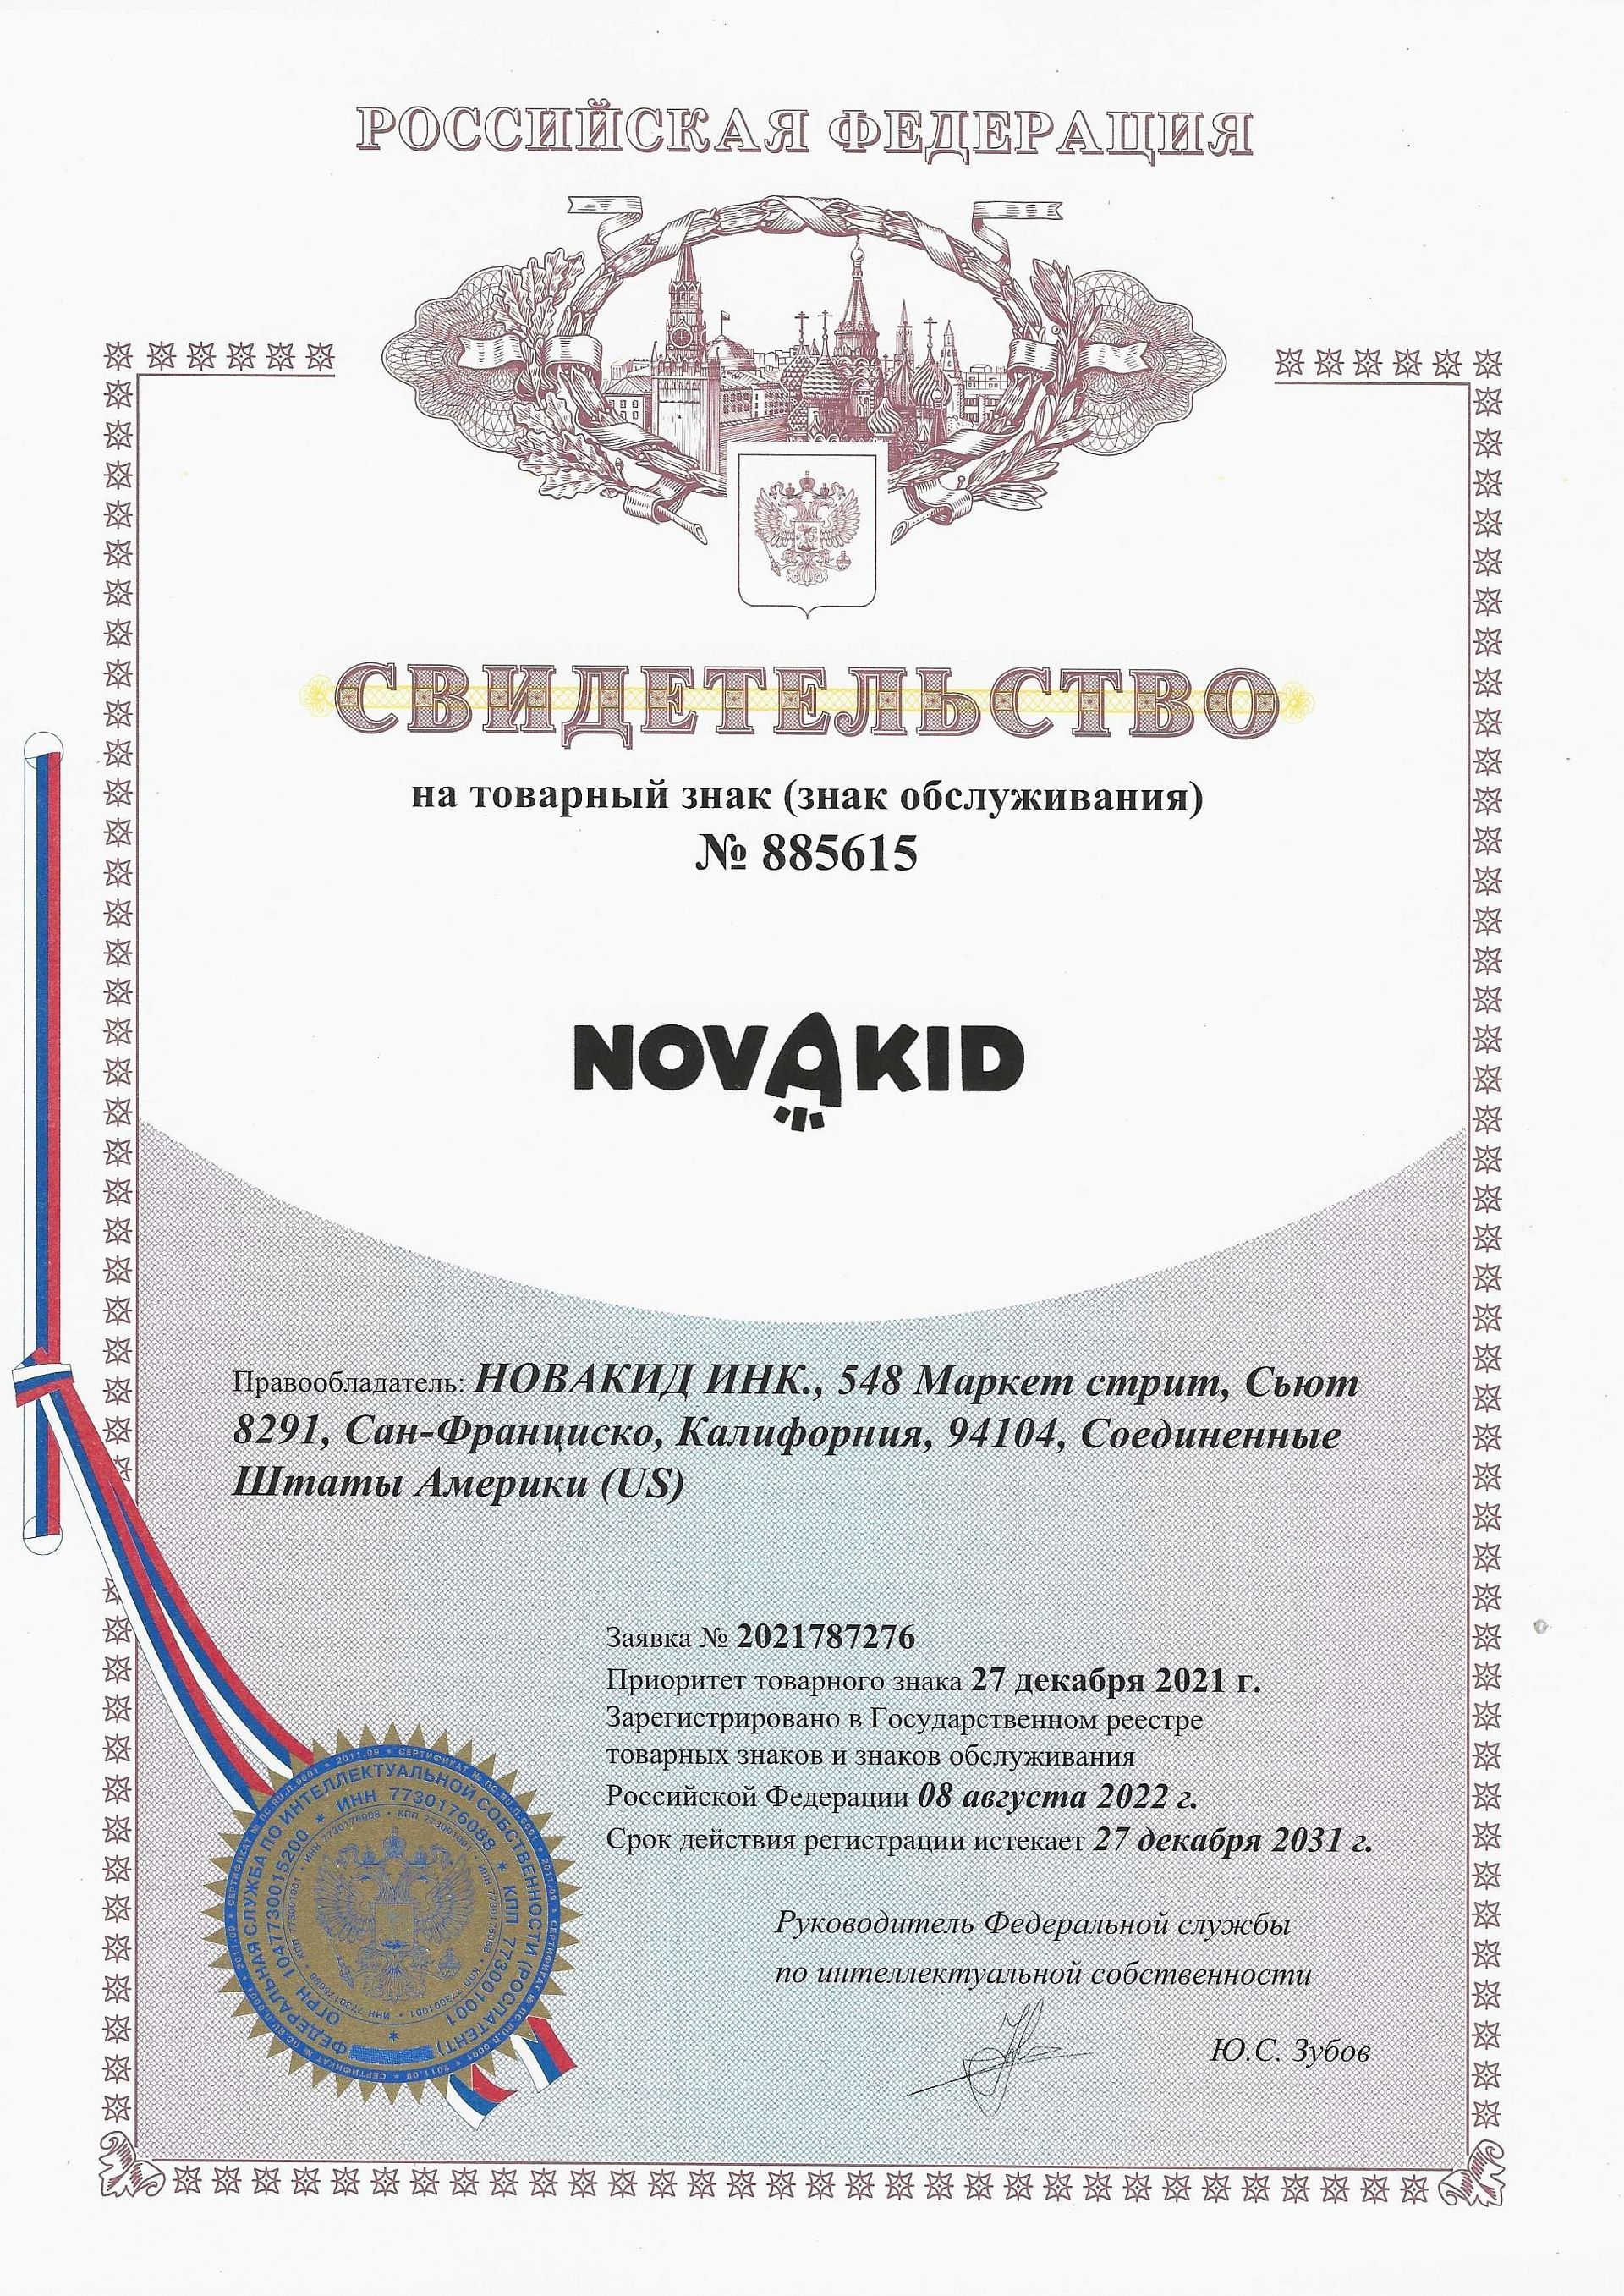 Товарный знак № 885615 – Novakid